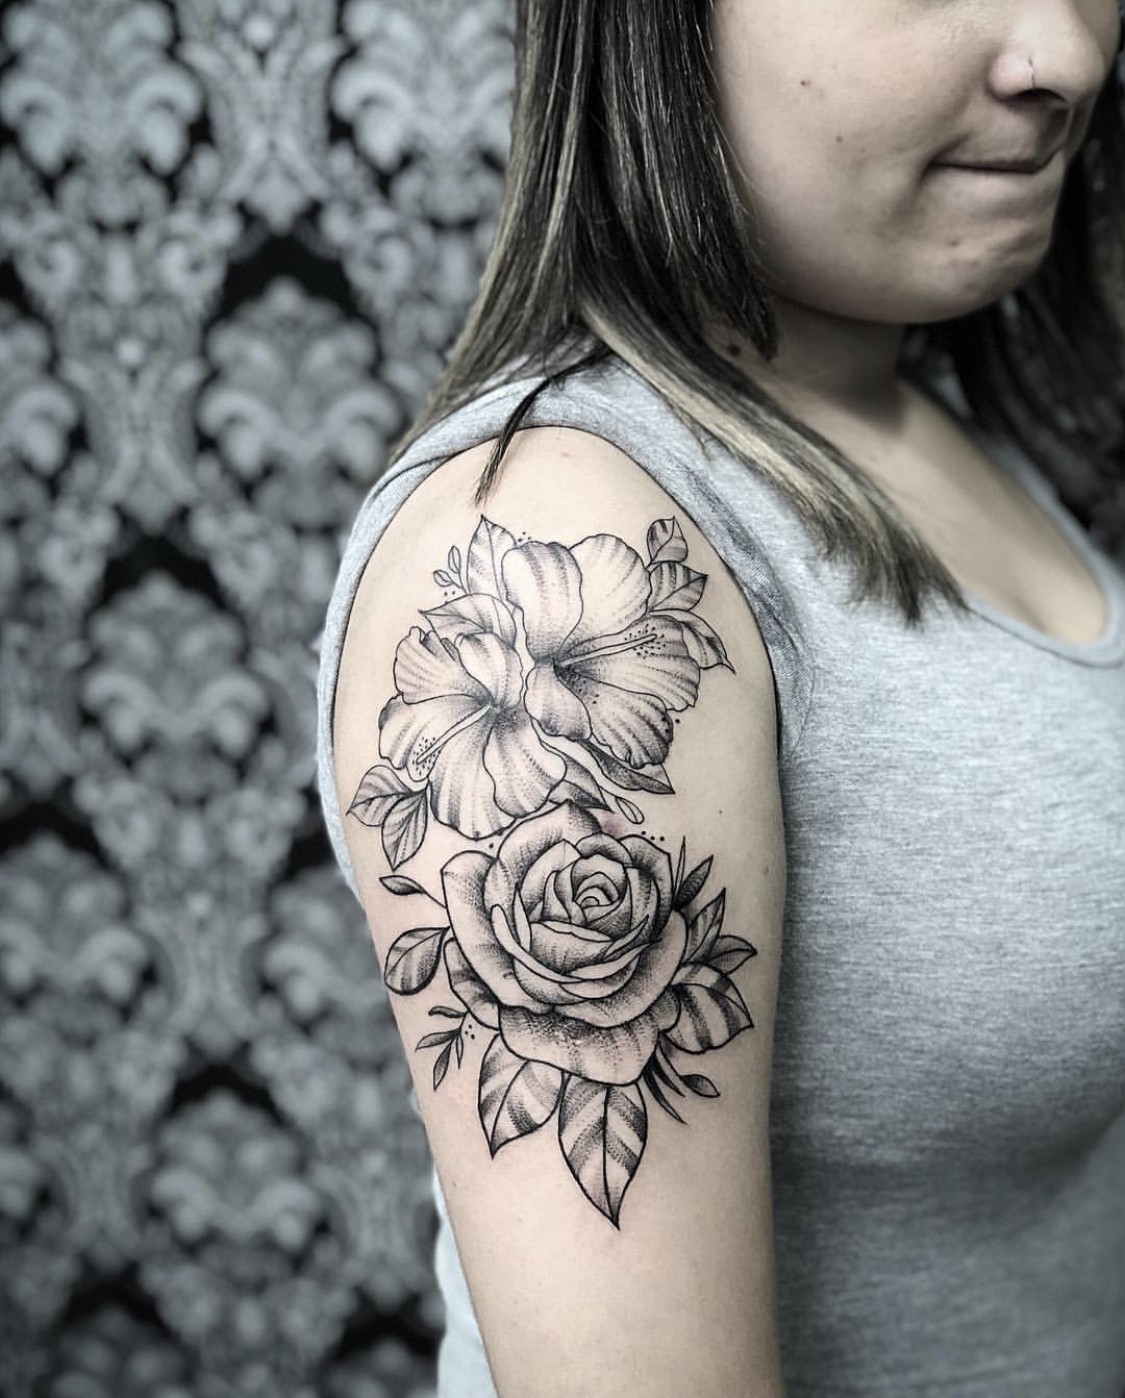 Tatuagem mandala na mão com rosas e arabescos. Tattoo super